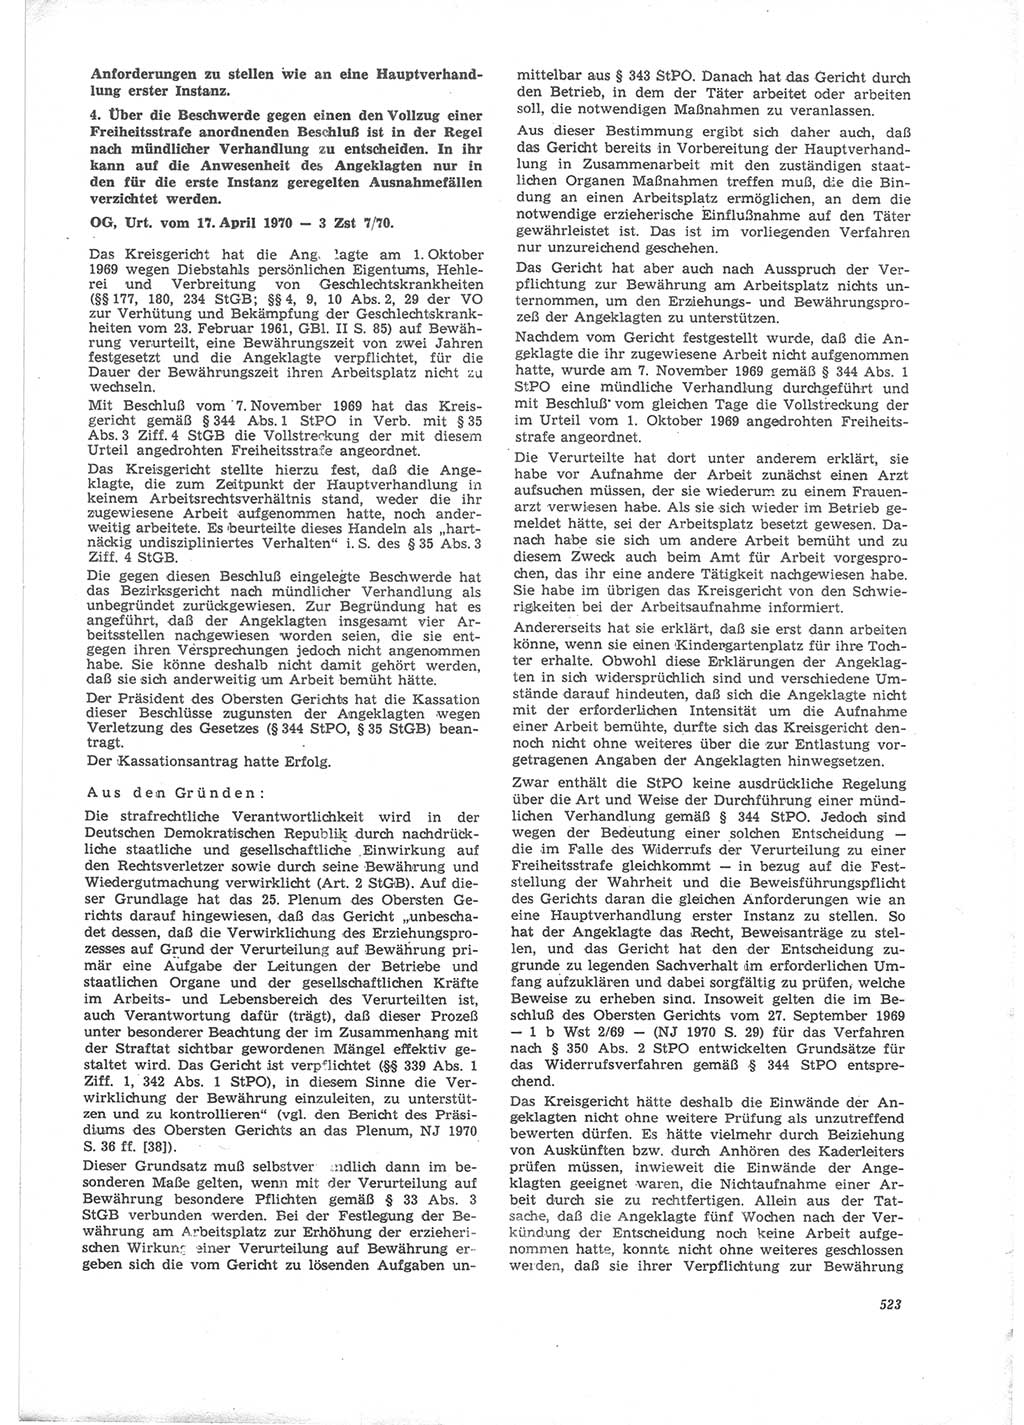 Neue Justiz (NJ), Zeitschrift für Recht und Rechtswissenschaft [Deutsche Demokratische Republik (DDR)], 24. Jahrgang 1970, Seite 523 (NJ DDR 1970, S. 523)